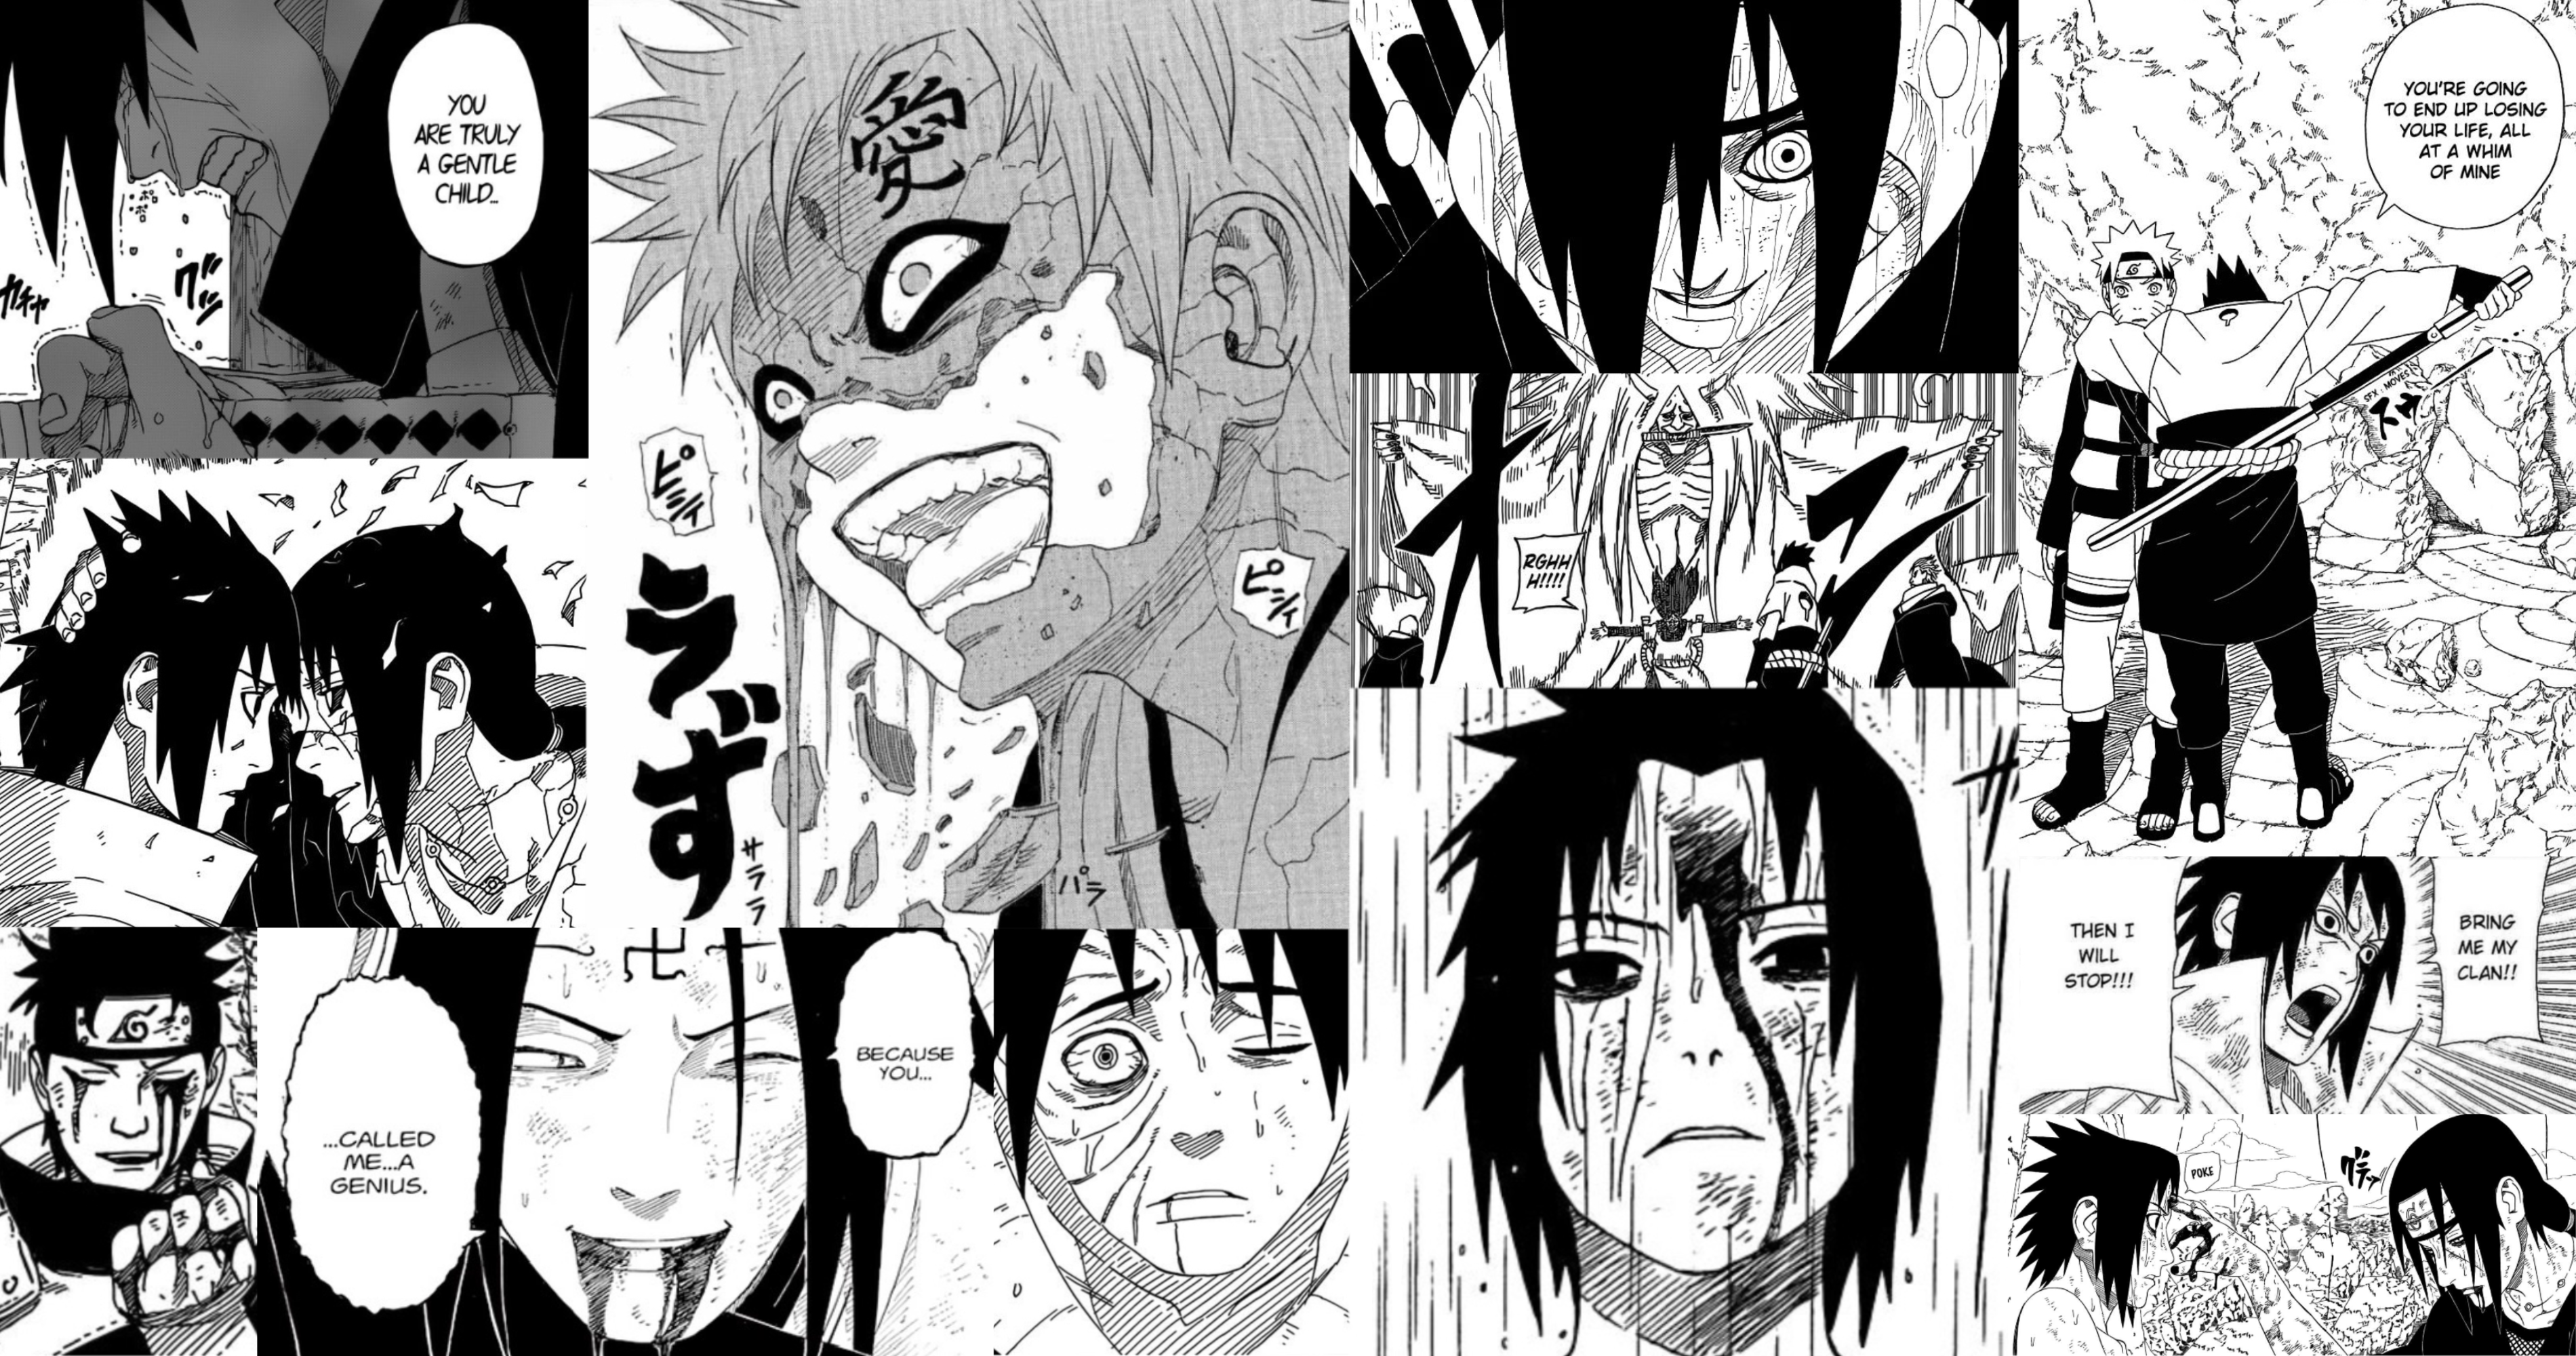 naruto manga panel. Texture graphic design, Naruto art, Naruto wallpaper